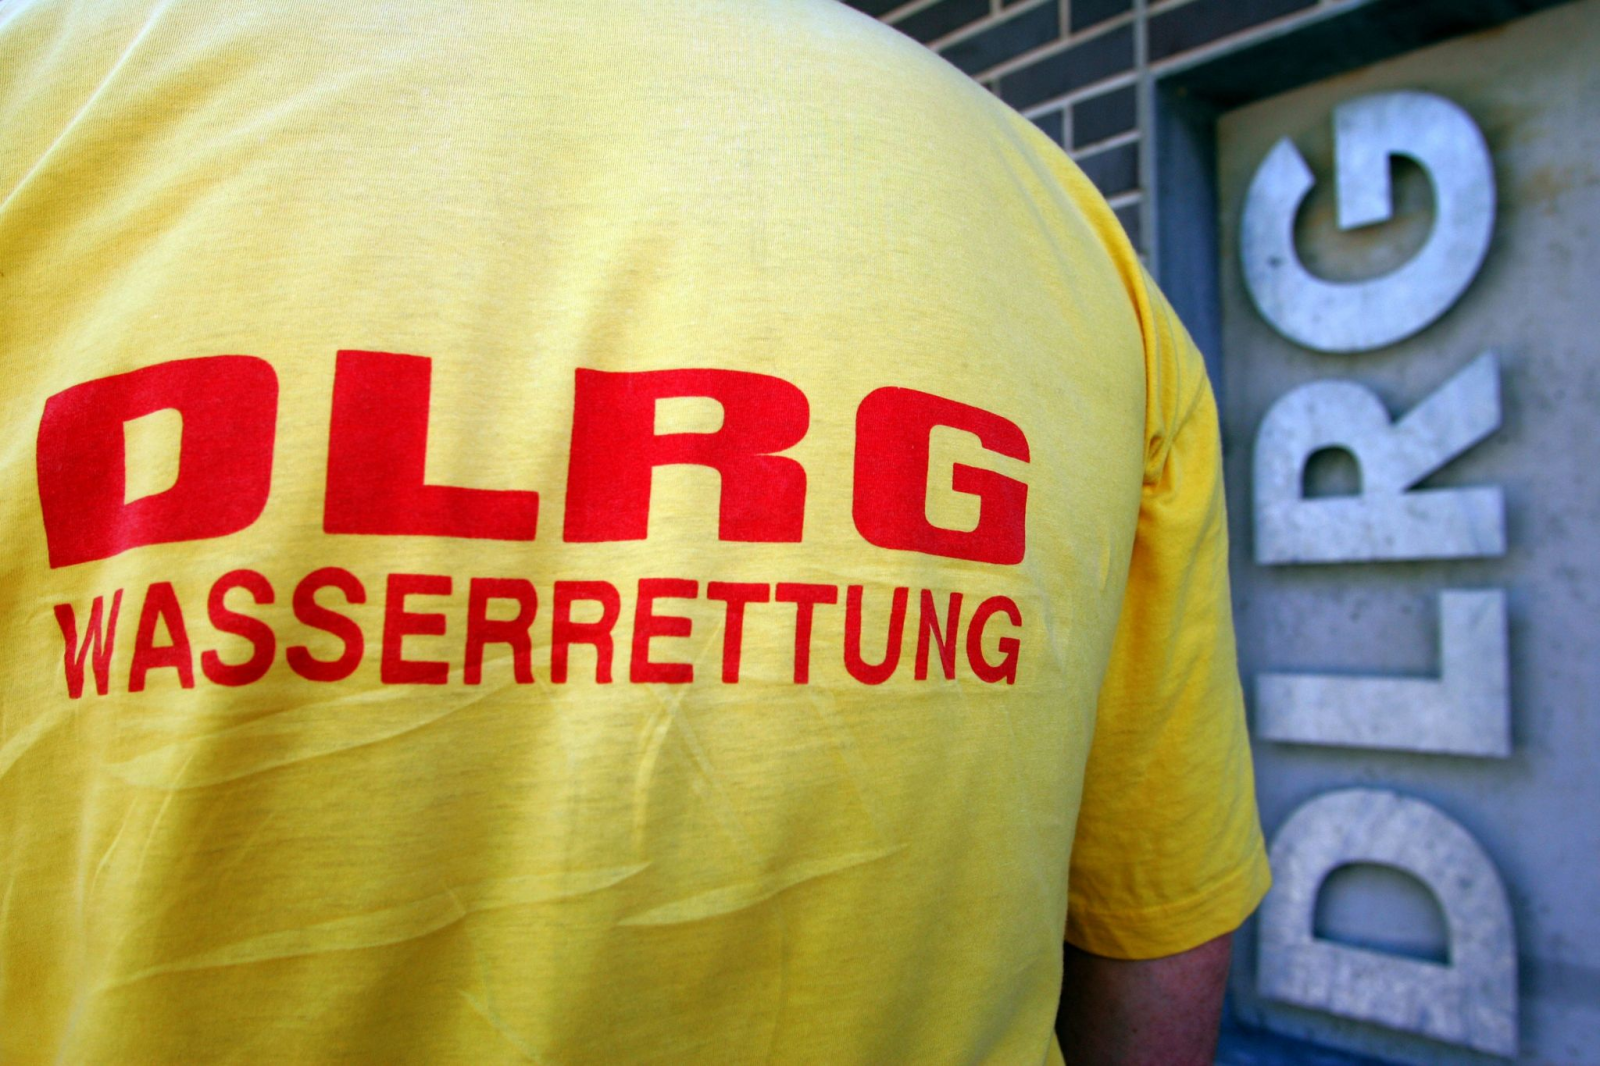 Ein Helfer der DLRG (Deutsche Lebens-Rettungs-Gesellschaft) steht vor einem Logo.